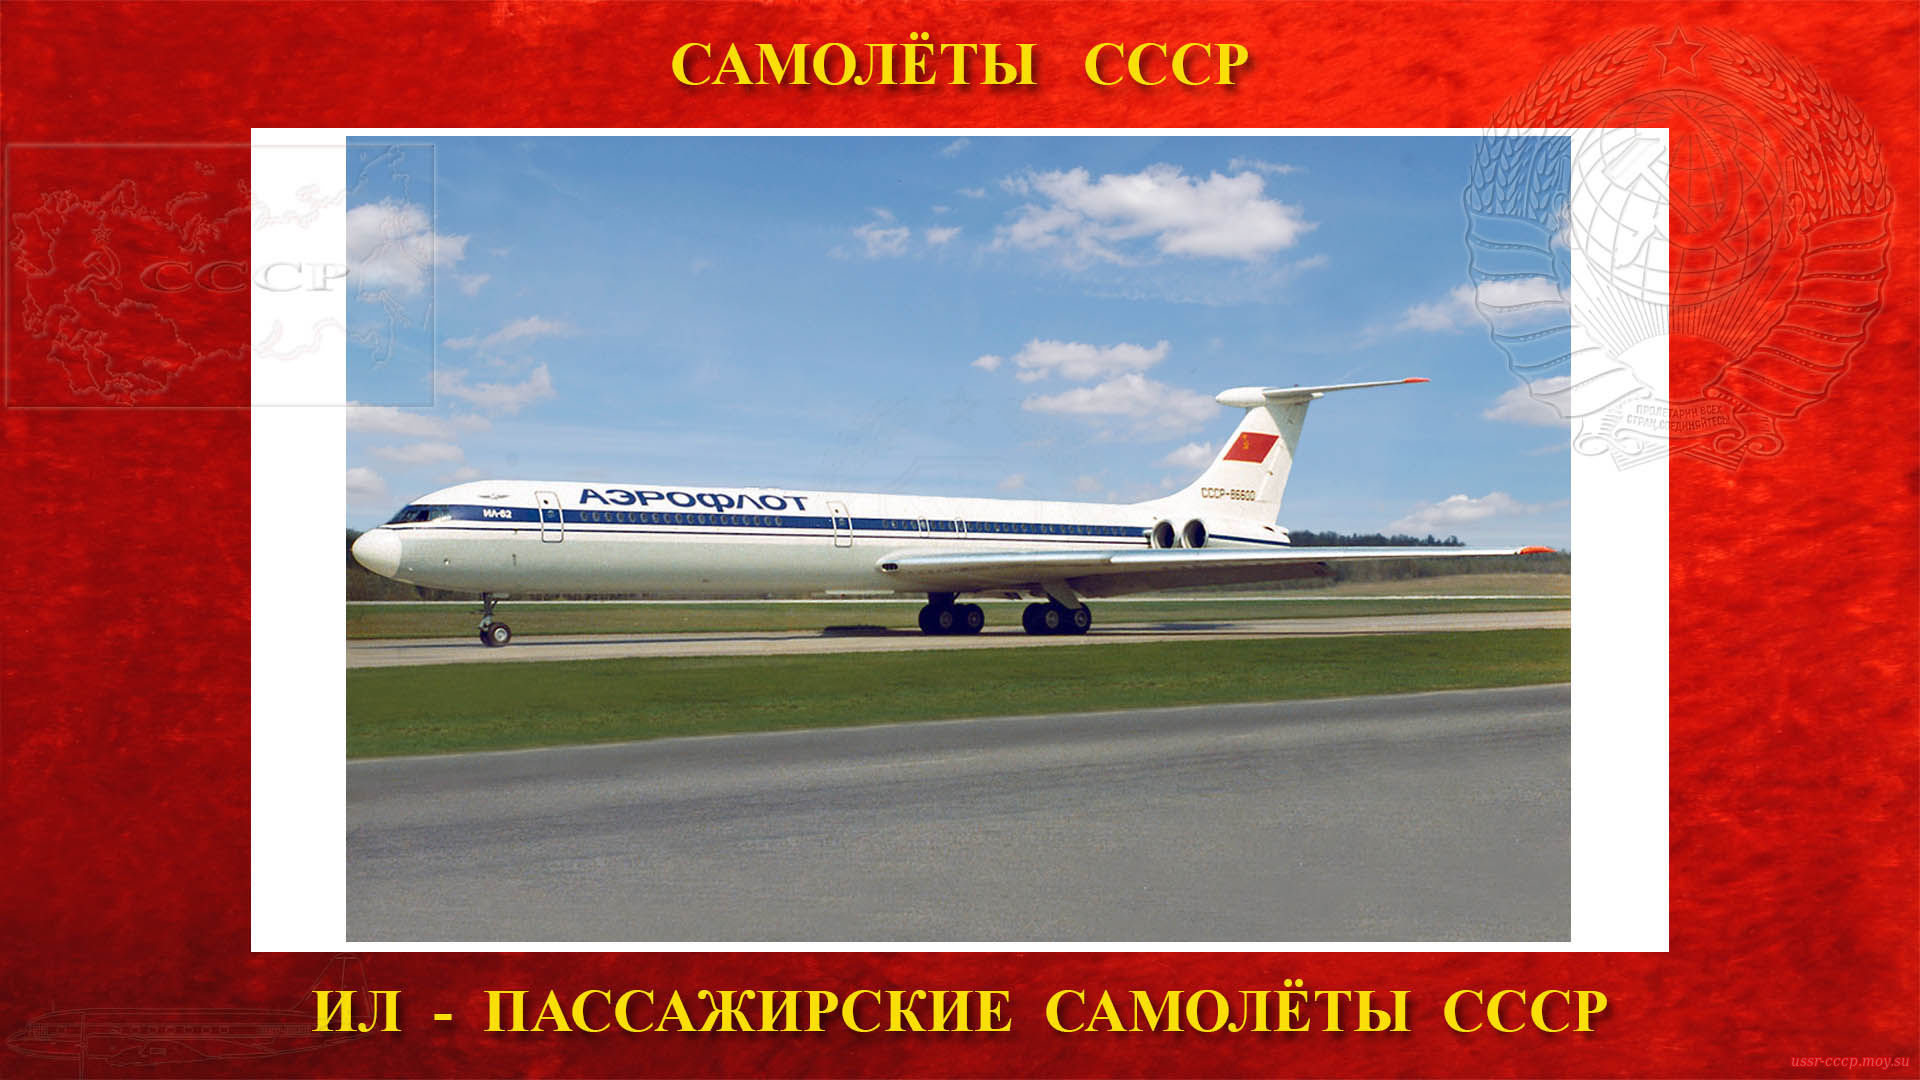 Ил-62 — Советский пассажирский дальнемагистральный самолёт СССР 1-го класса на реактивной тяге (03. 01.1963)